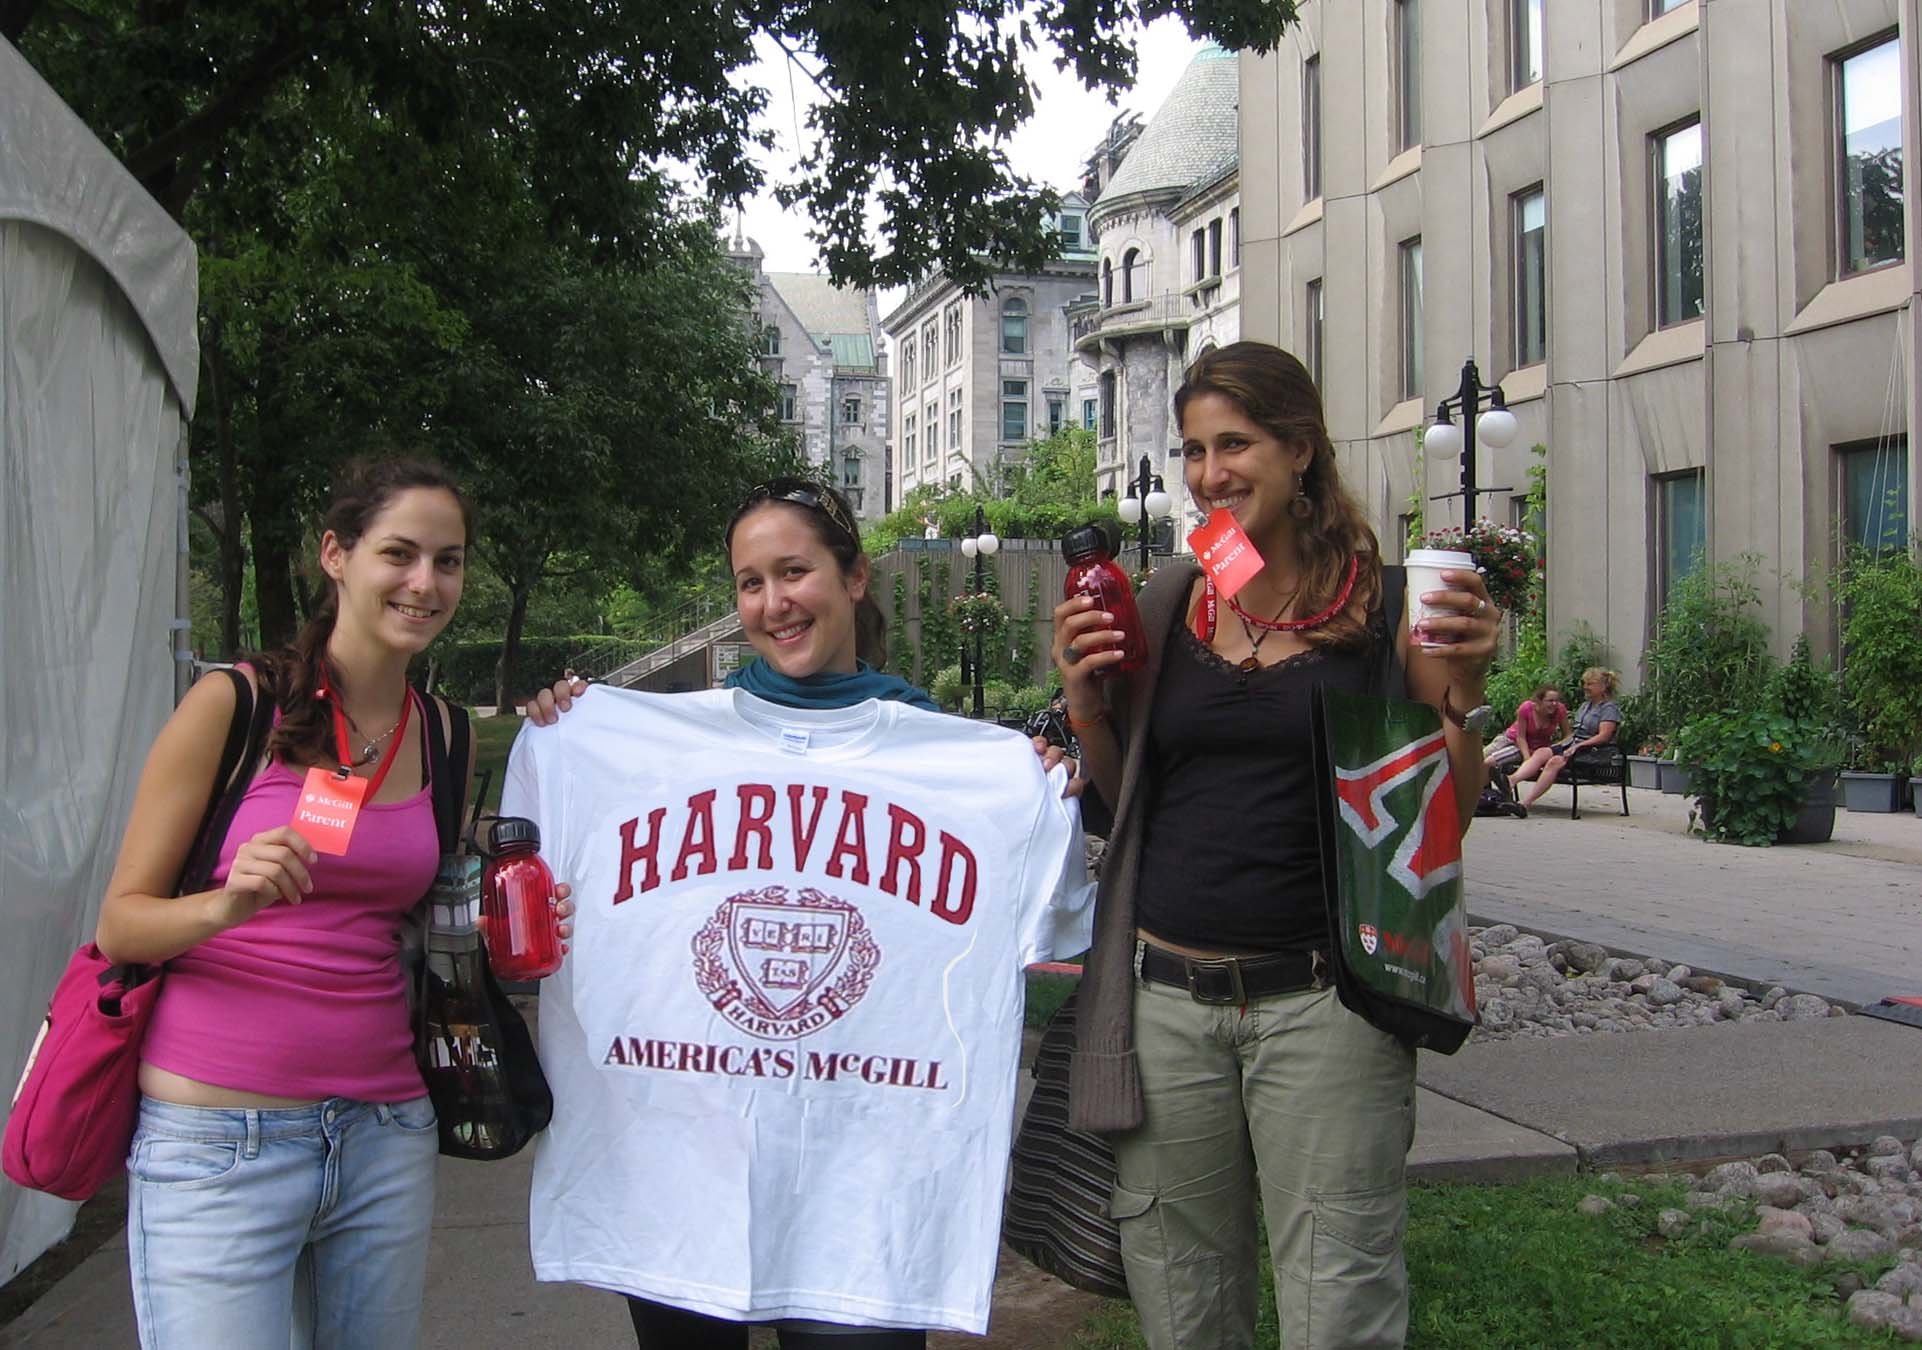 BGU Student at Harvard